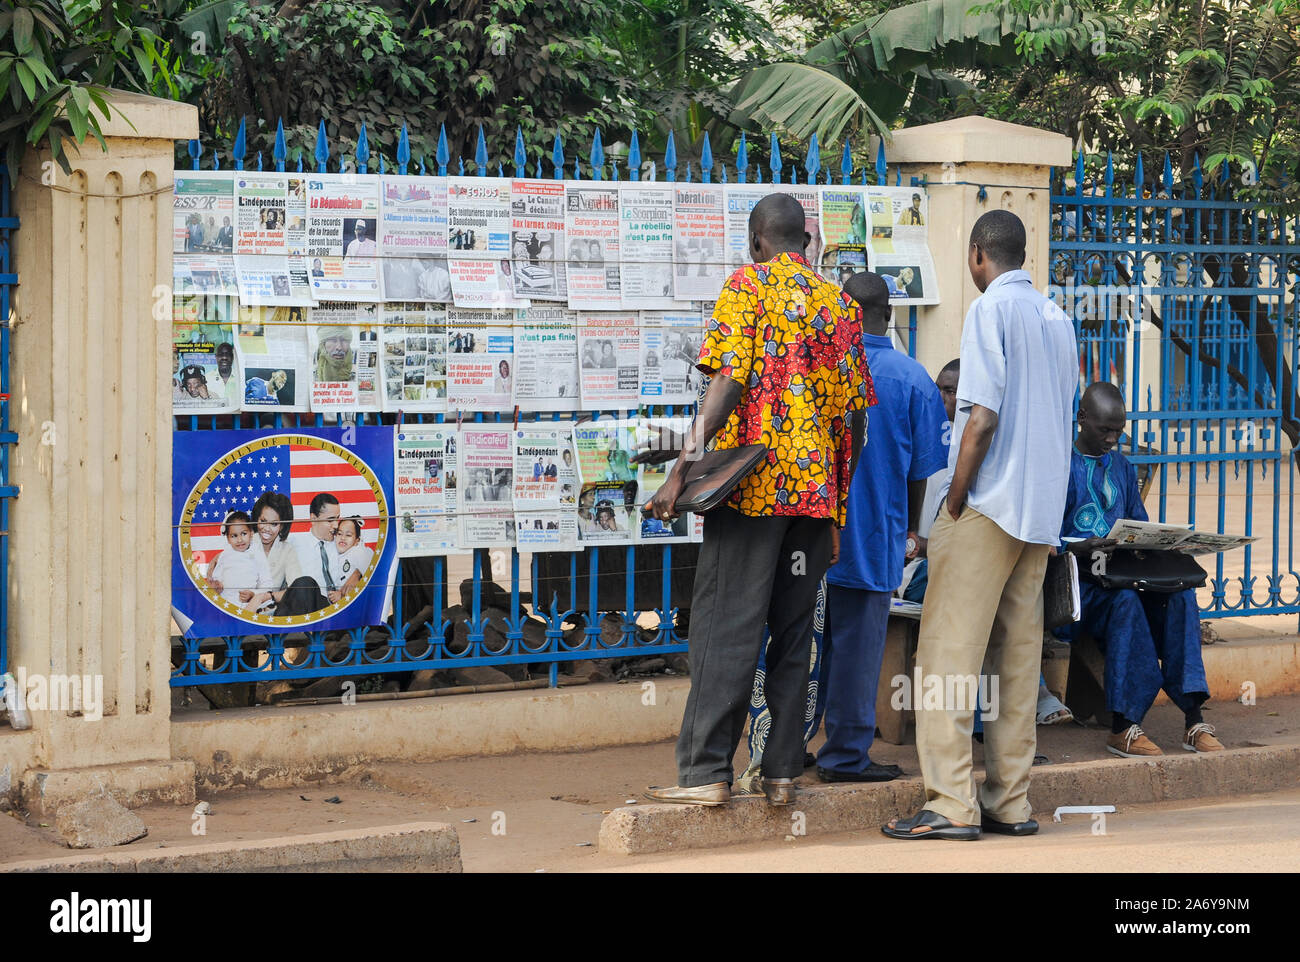 MALI, Bamako , kiosque à journaux en langue française et de droit de la famille de Barack Obama d'honorer le premier président afro-américain, le lecteur sur la route Banque D'Images